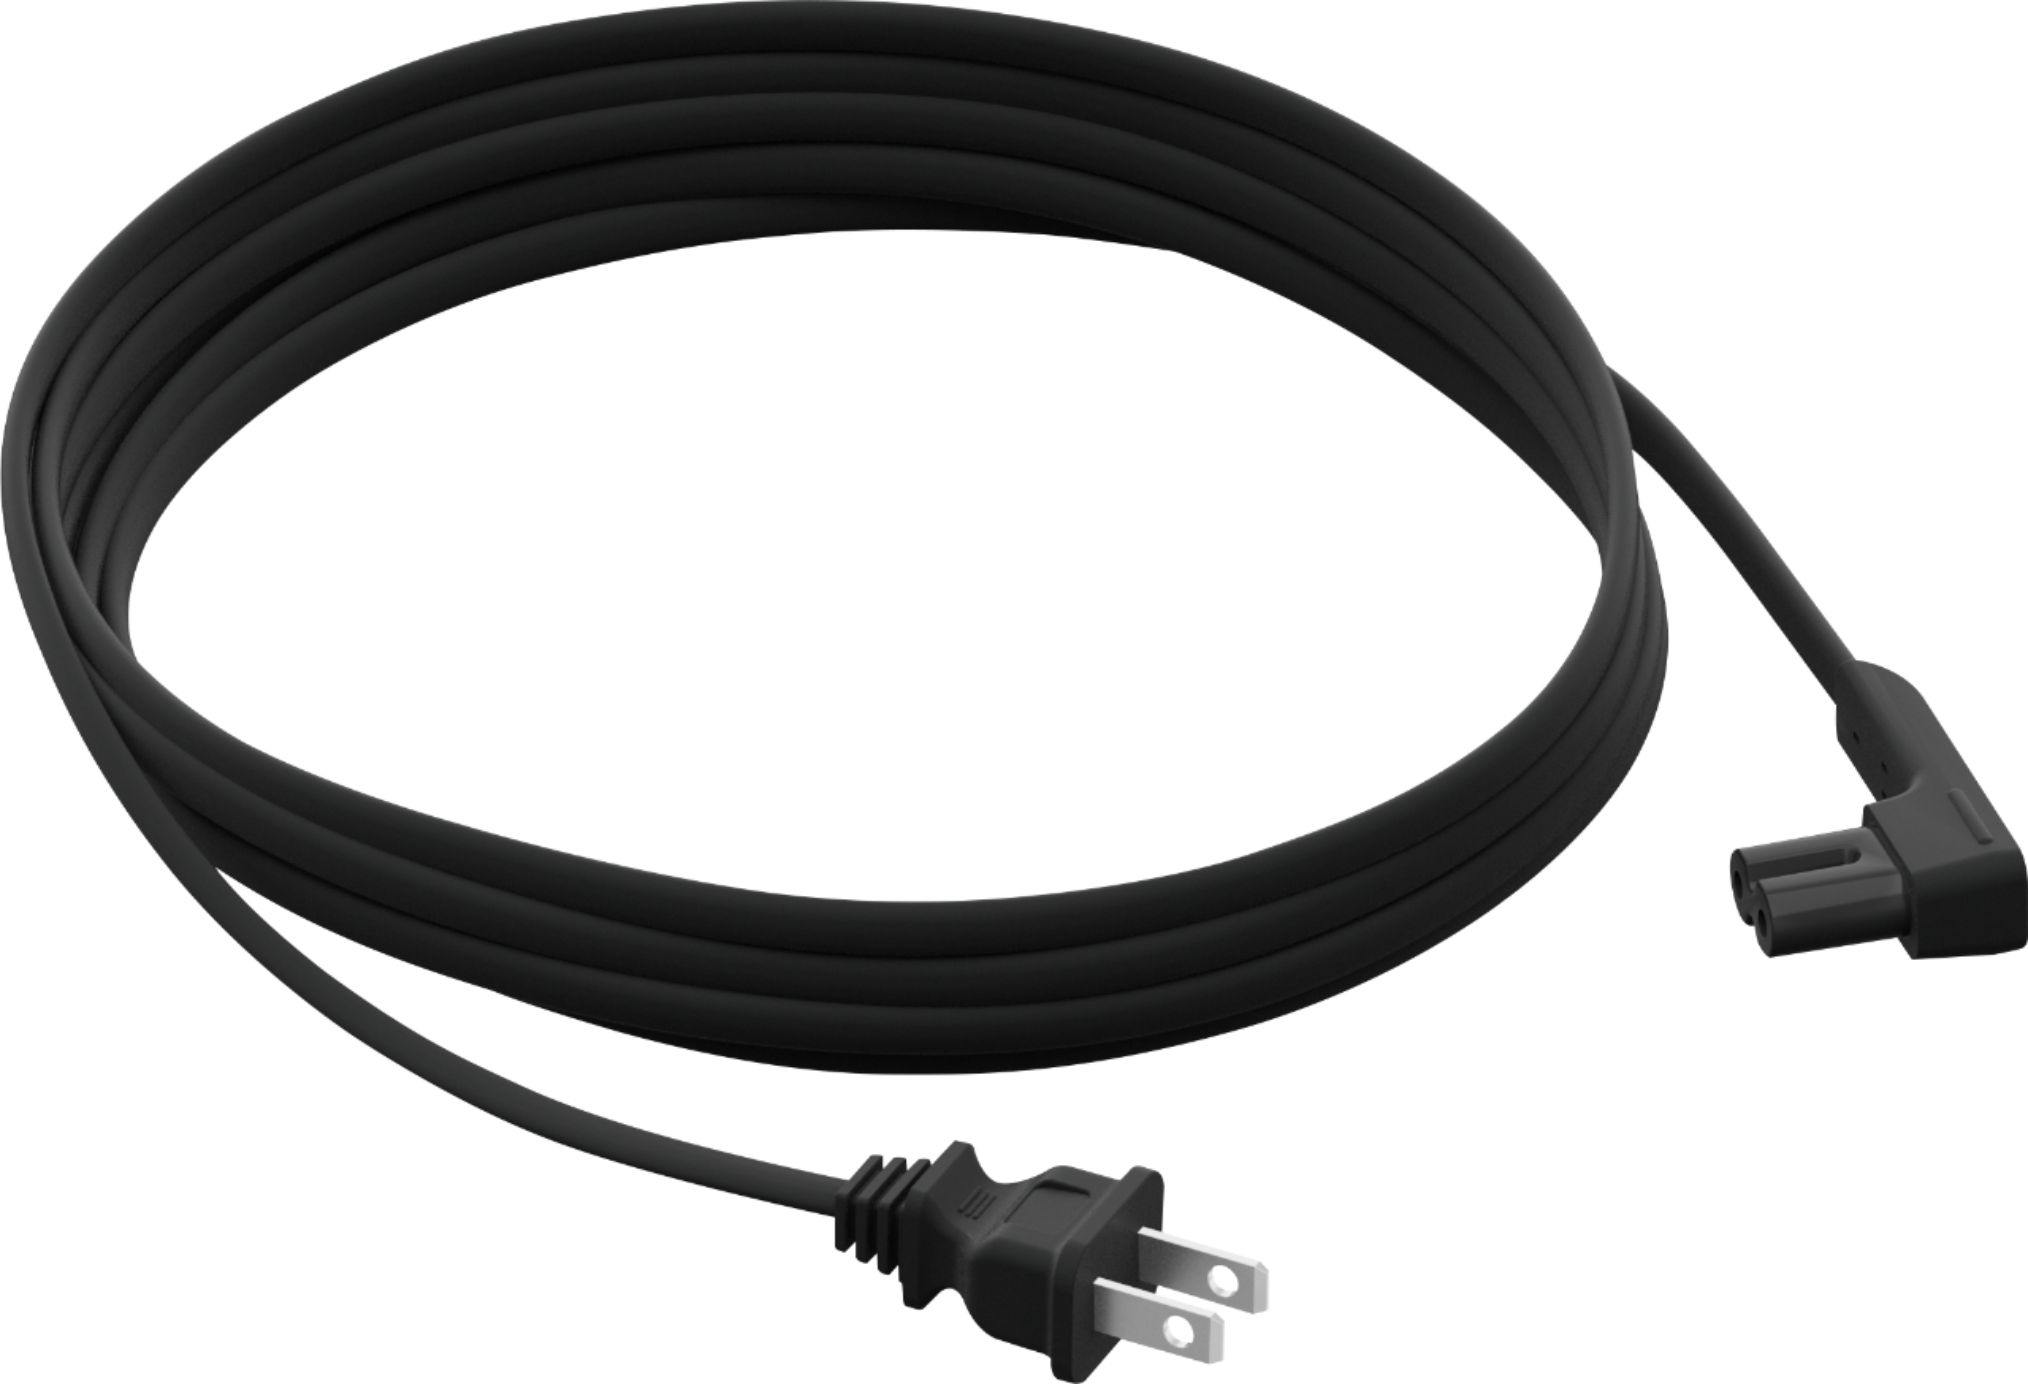 Sonos 11.5' Power Cable for Black PCS1LUS1BLK - Buy